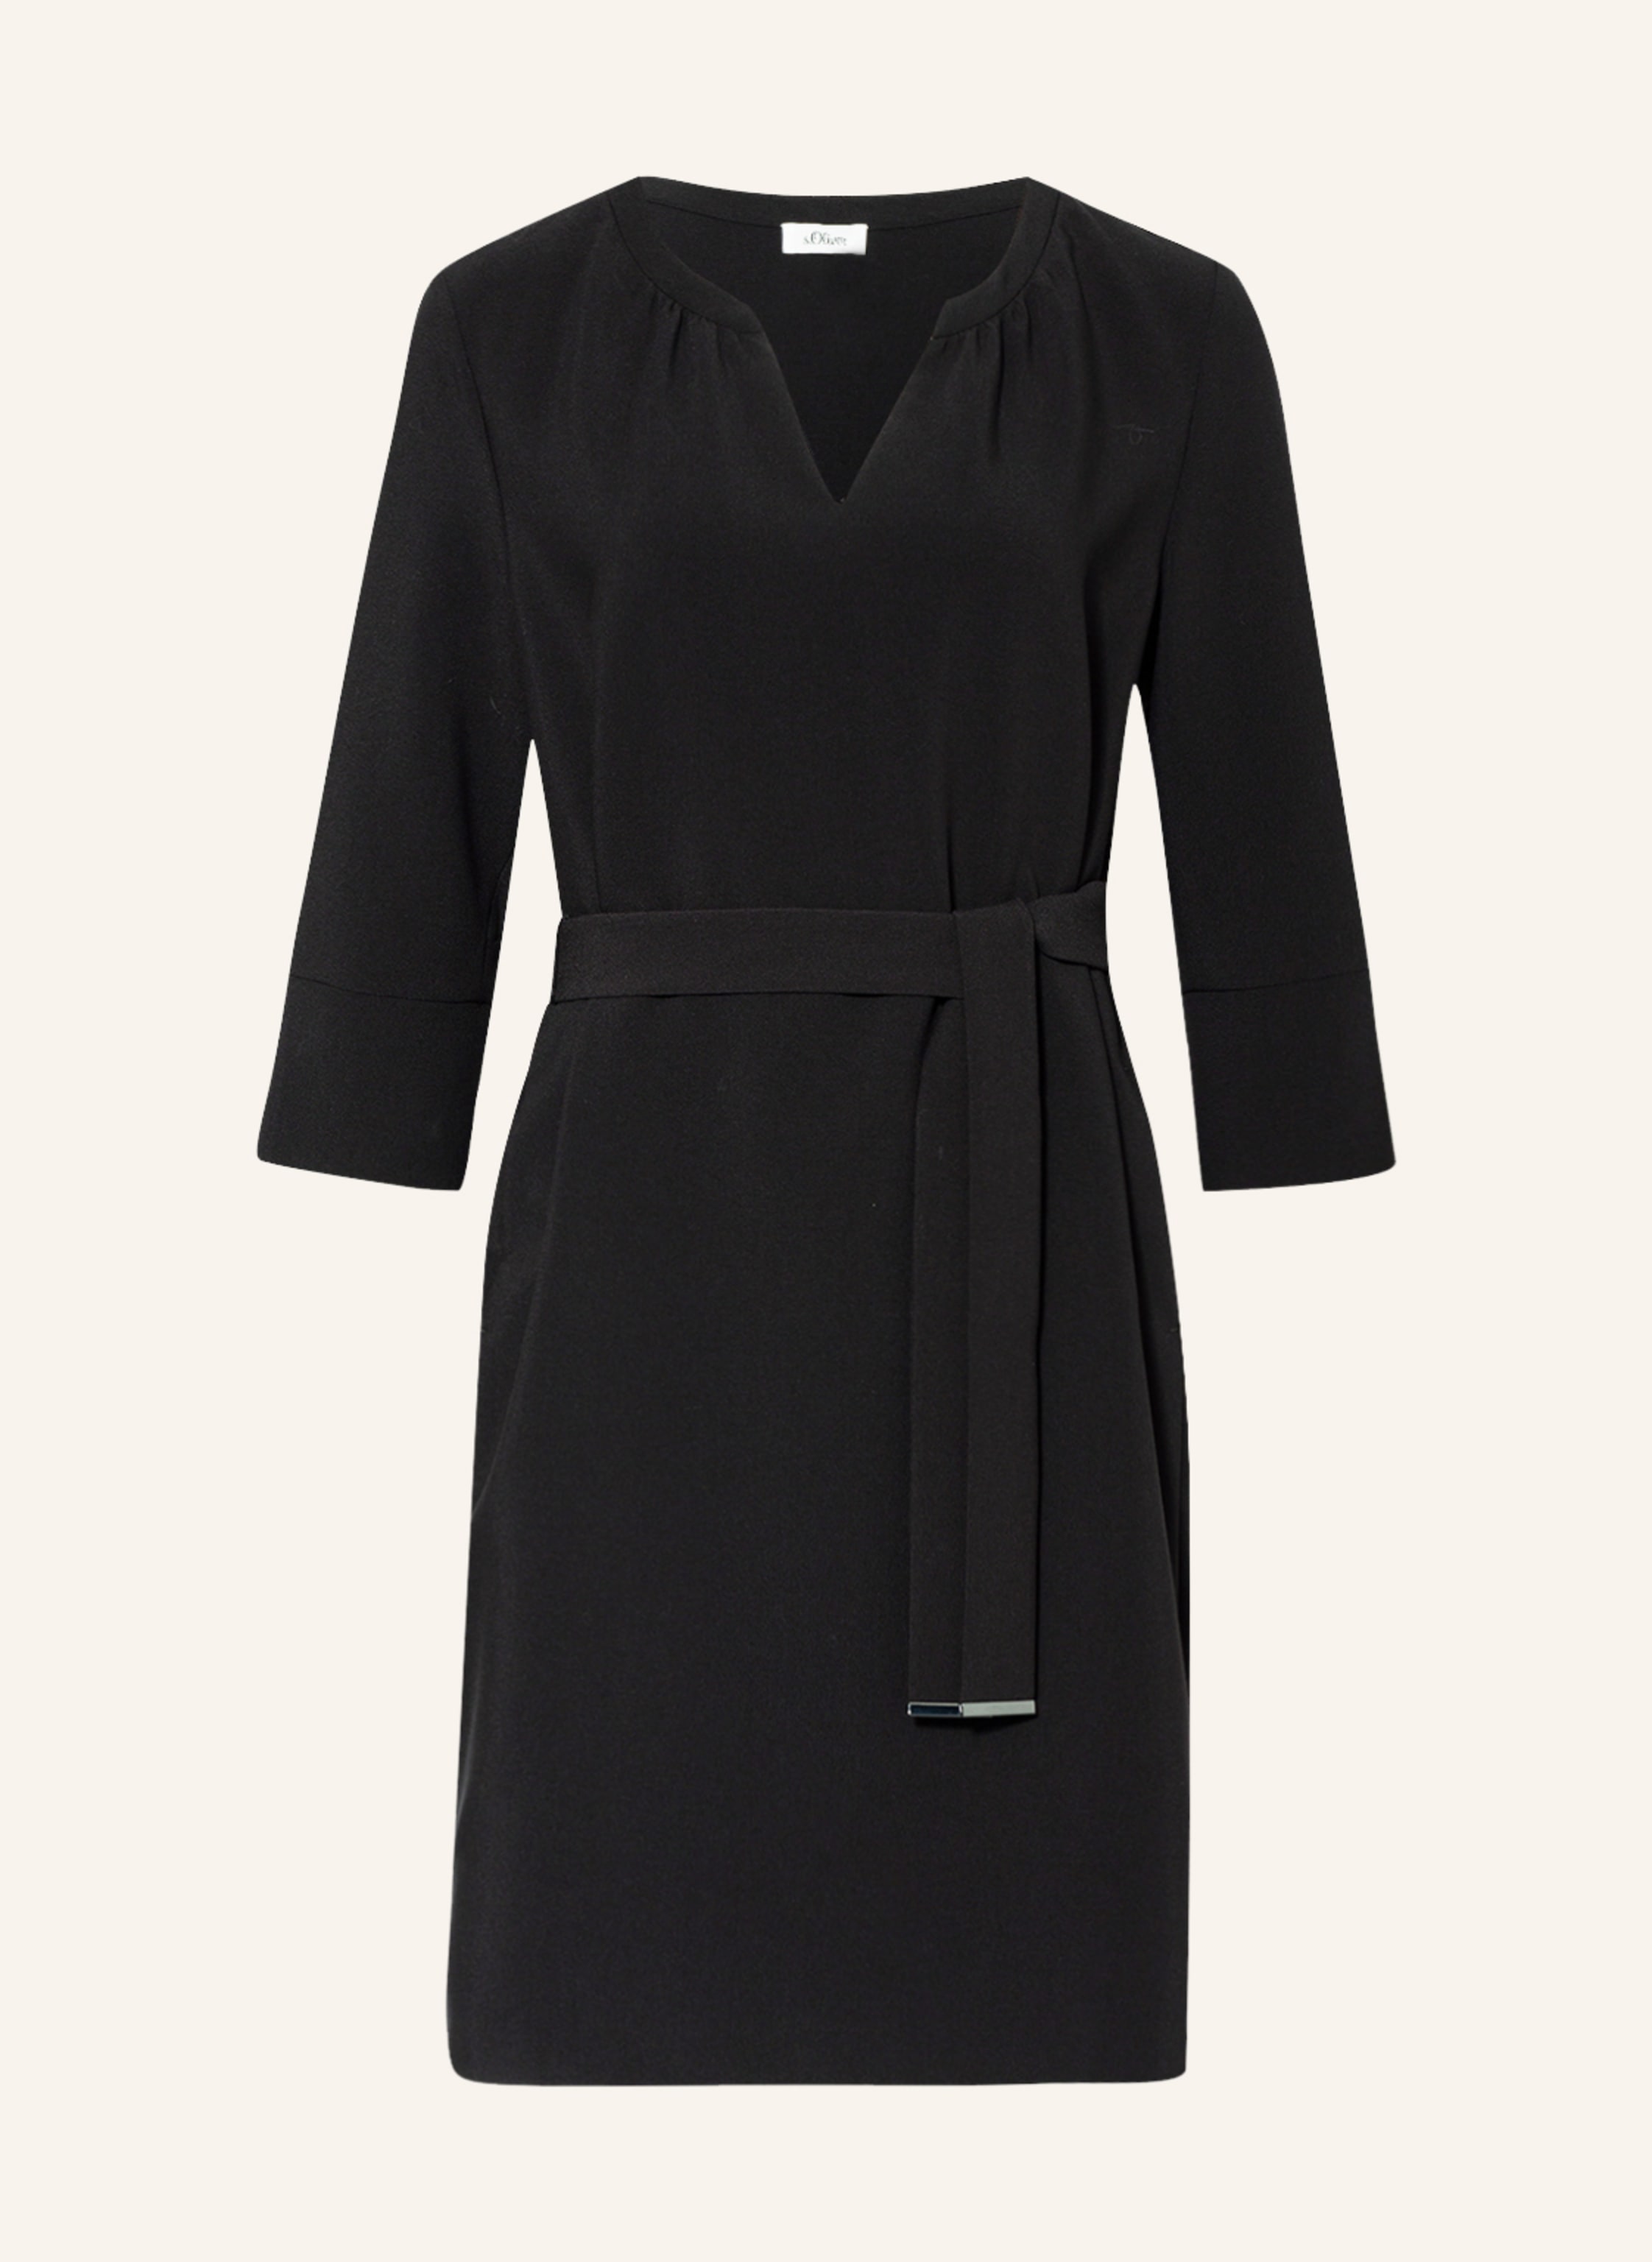 s.Oliver BLACK LABEL Kleid mit 3/4-Arm in schwarz